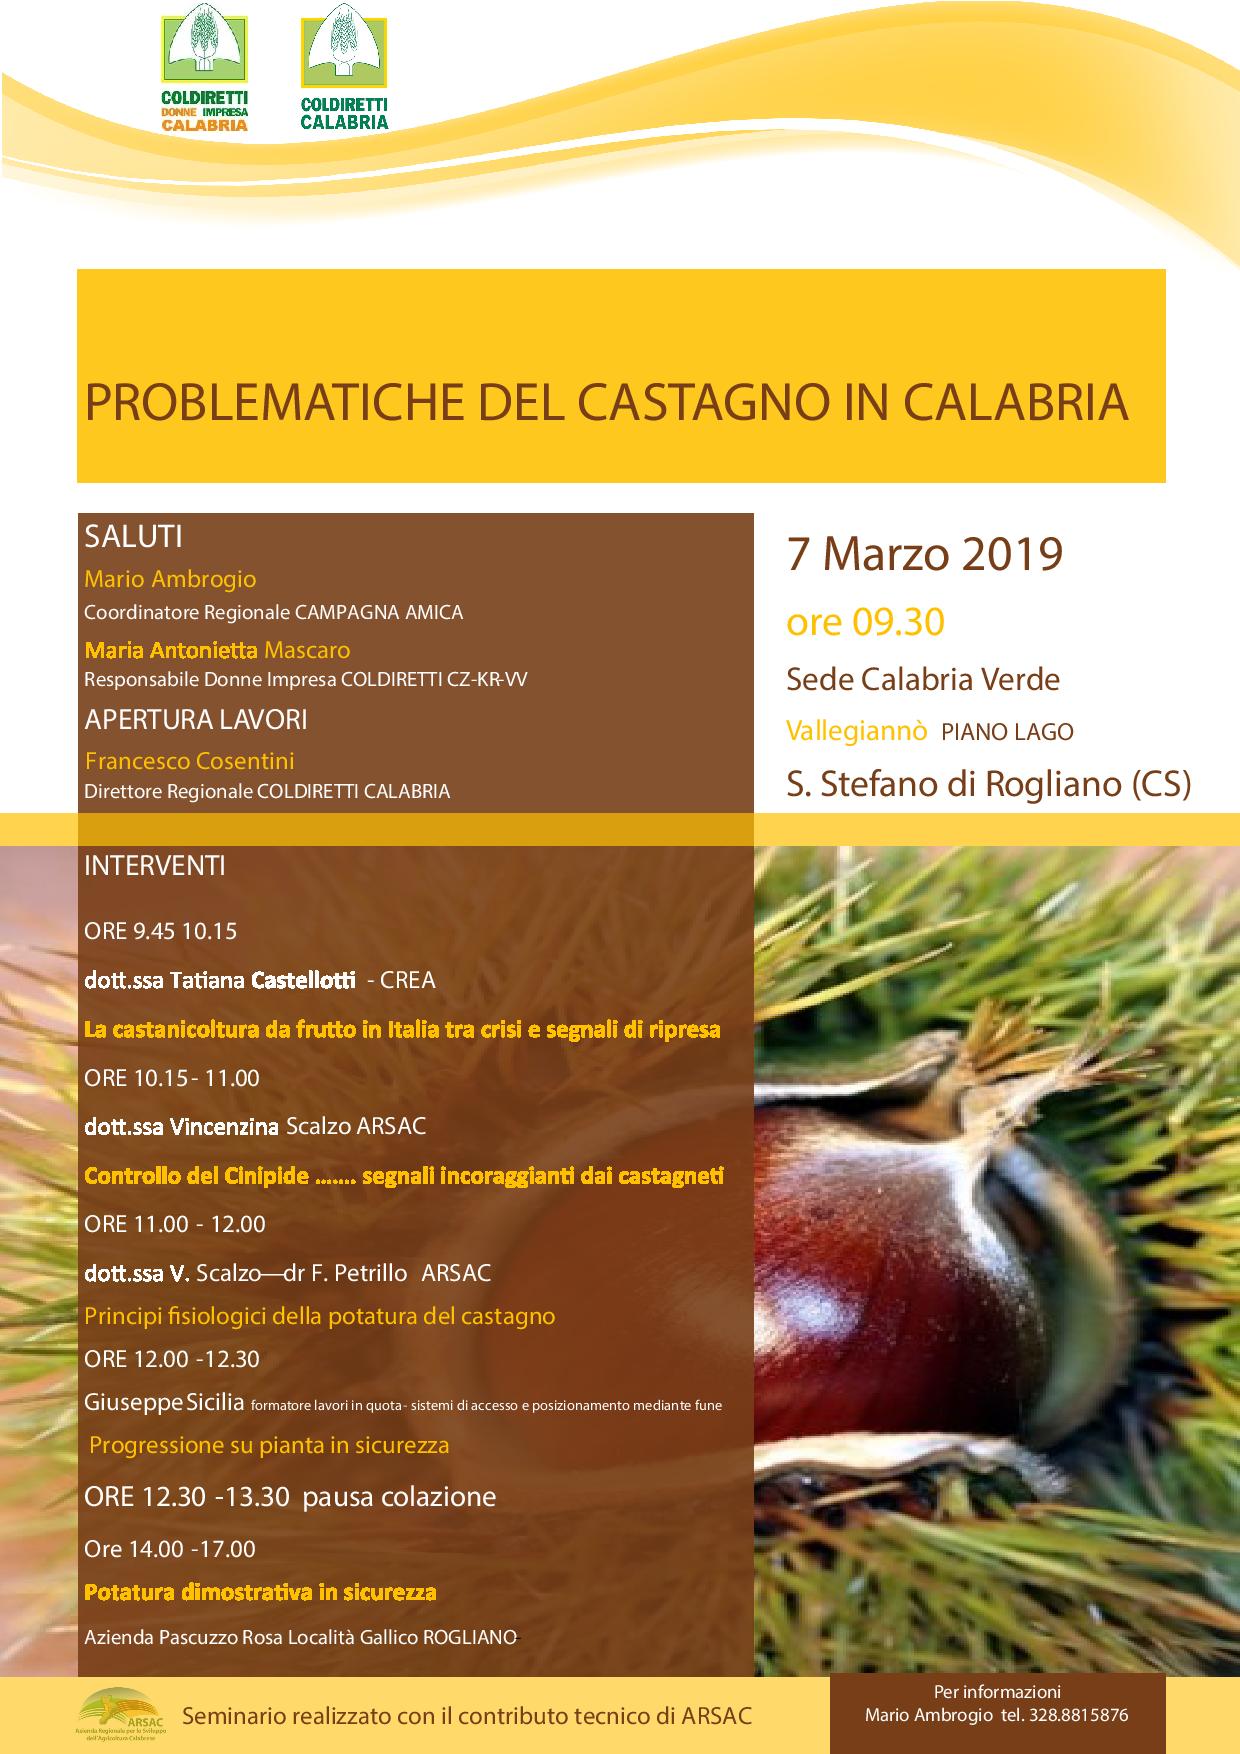 Le problematiche del castagno in Calabria